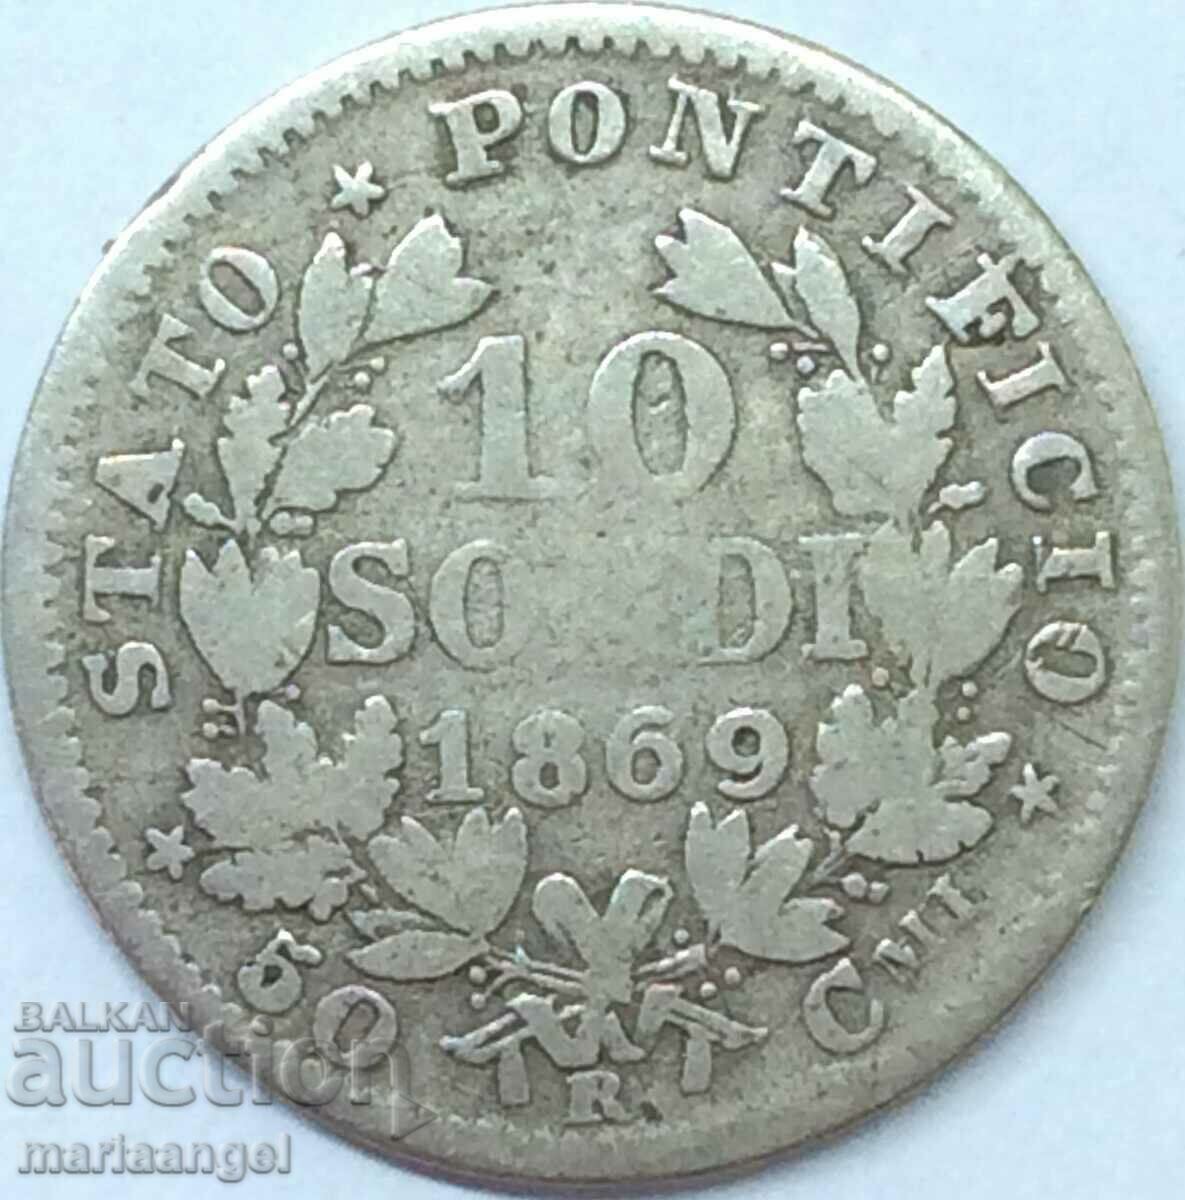 10 soldi 1869 Vatican Pius VI anno XXIV argint